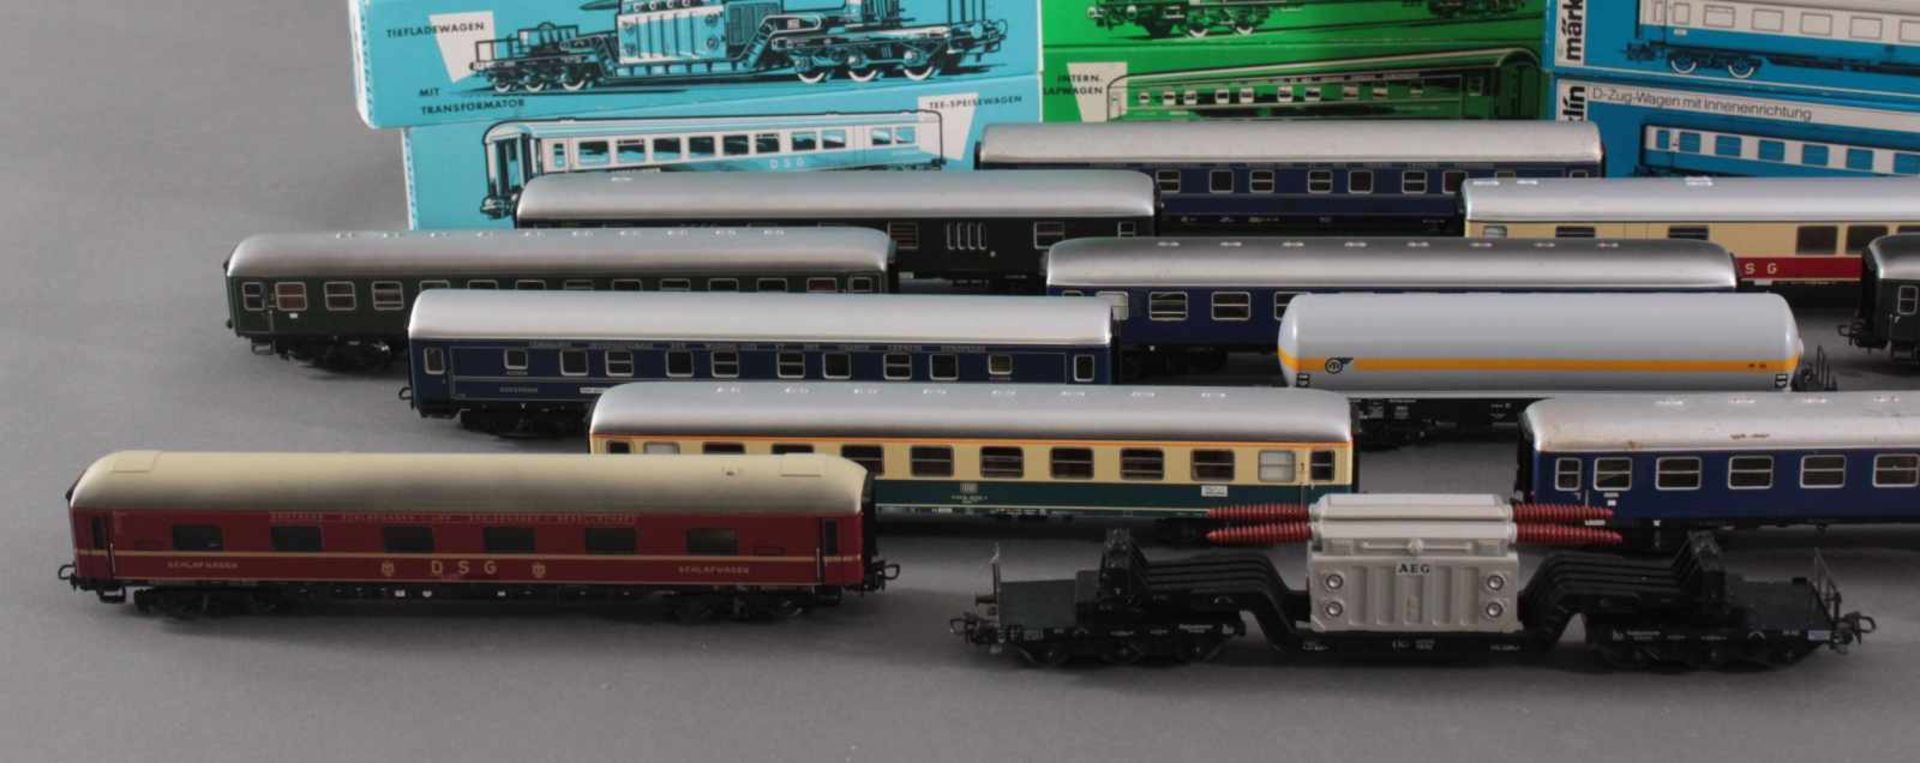 14 Märklin Güterwaggons in der Originalverpackung Spur H0Modellnummer 4044, 4064, 4052, 4617, - Bild 2 aus 4